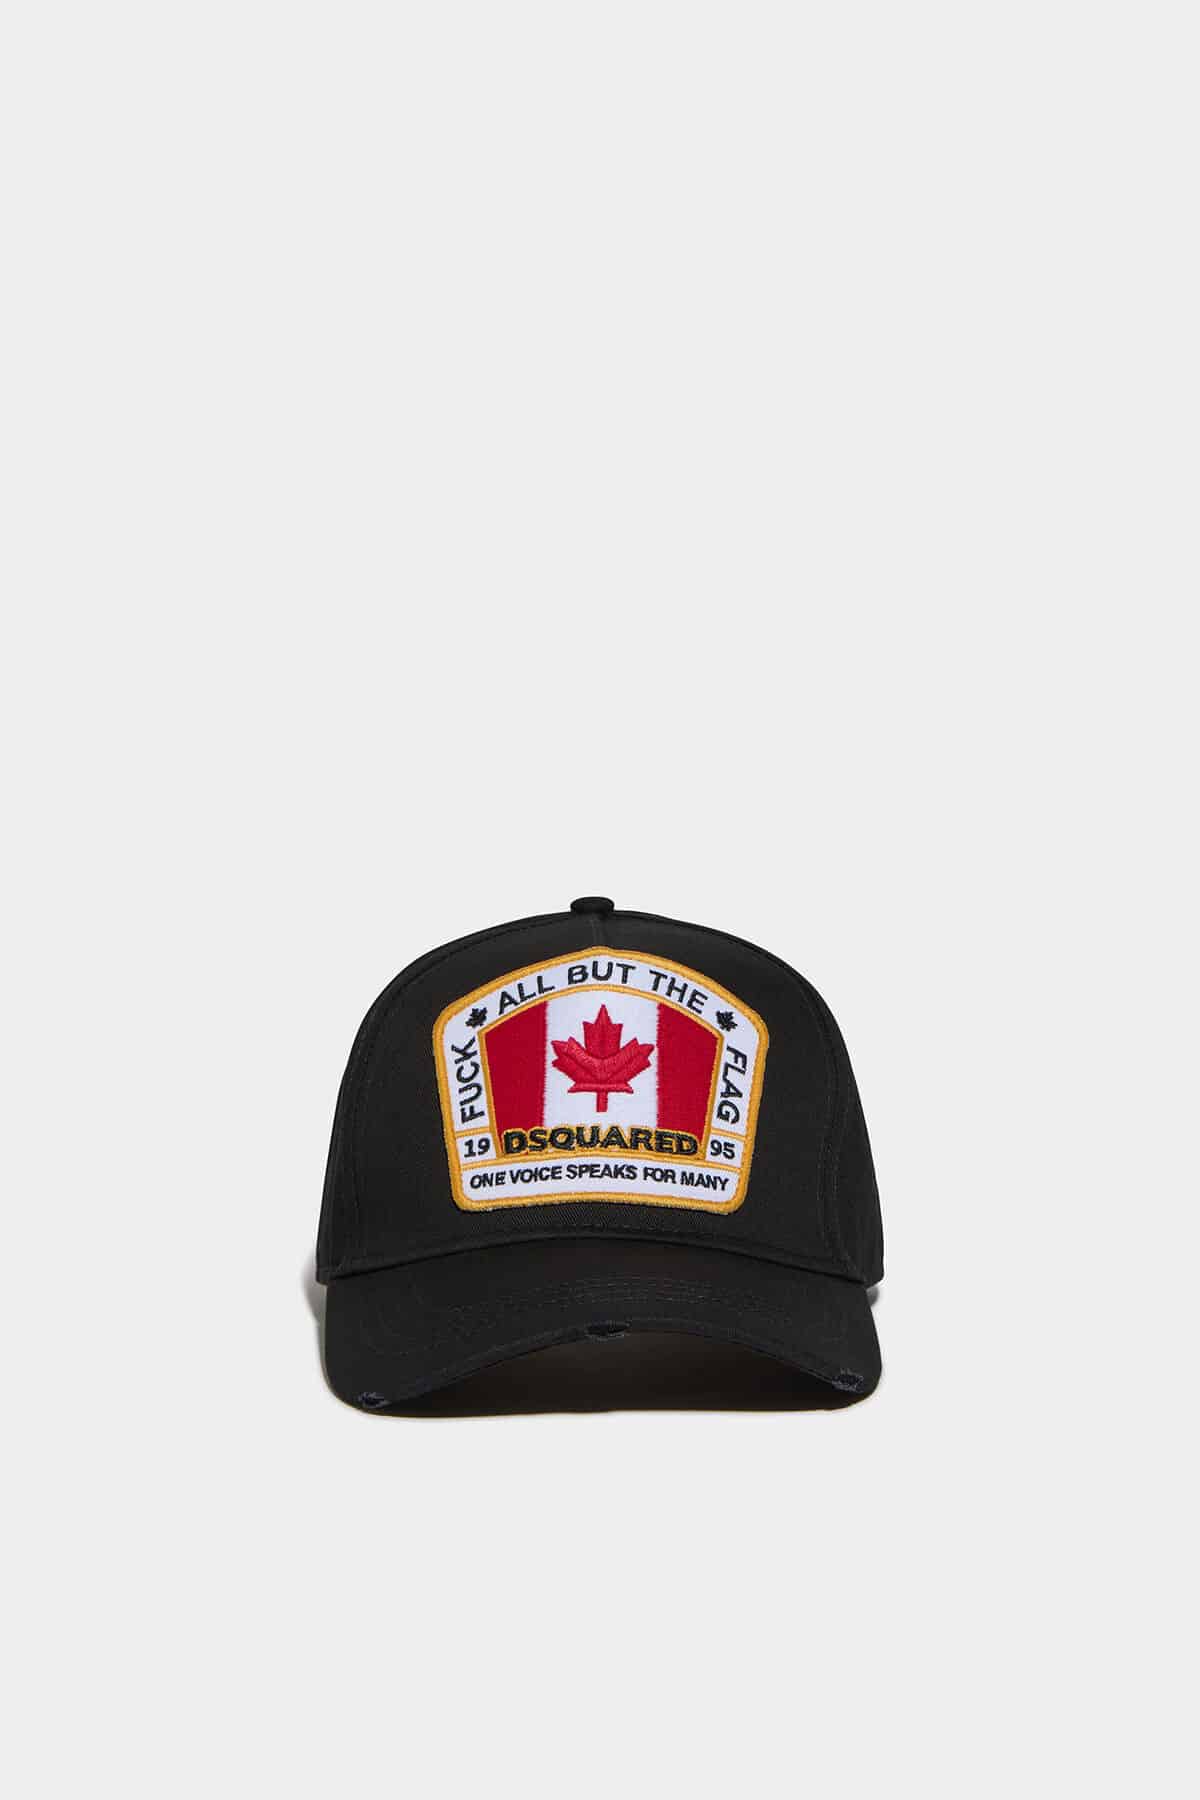 Dsquared Canadian Flag Cap Black